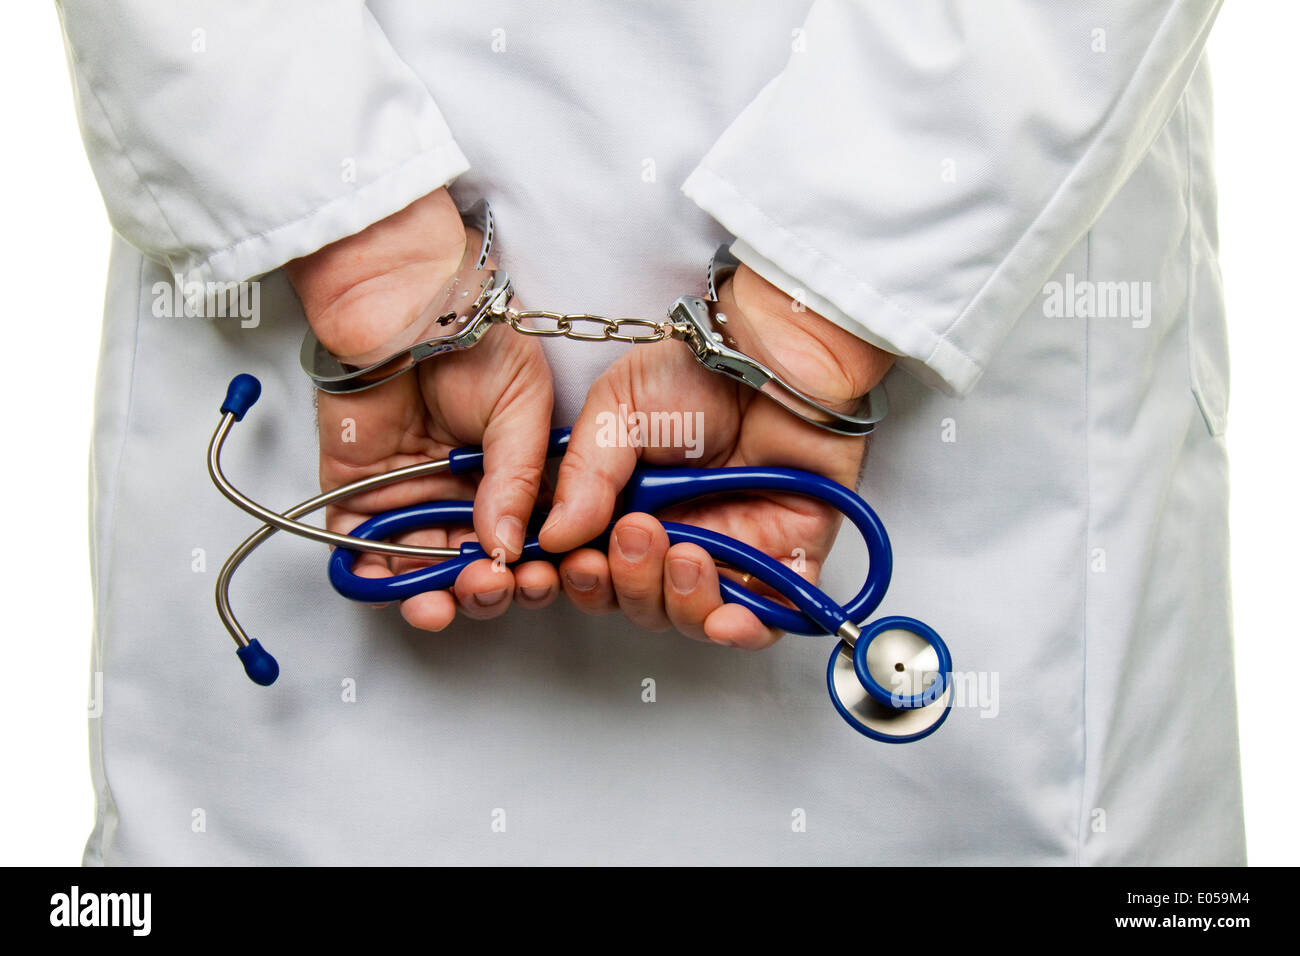 Medico con Stethoskop e manette, Arzt mit Stethoskop und Handschellen Foto Stock